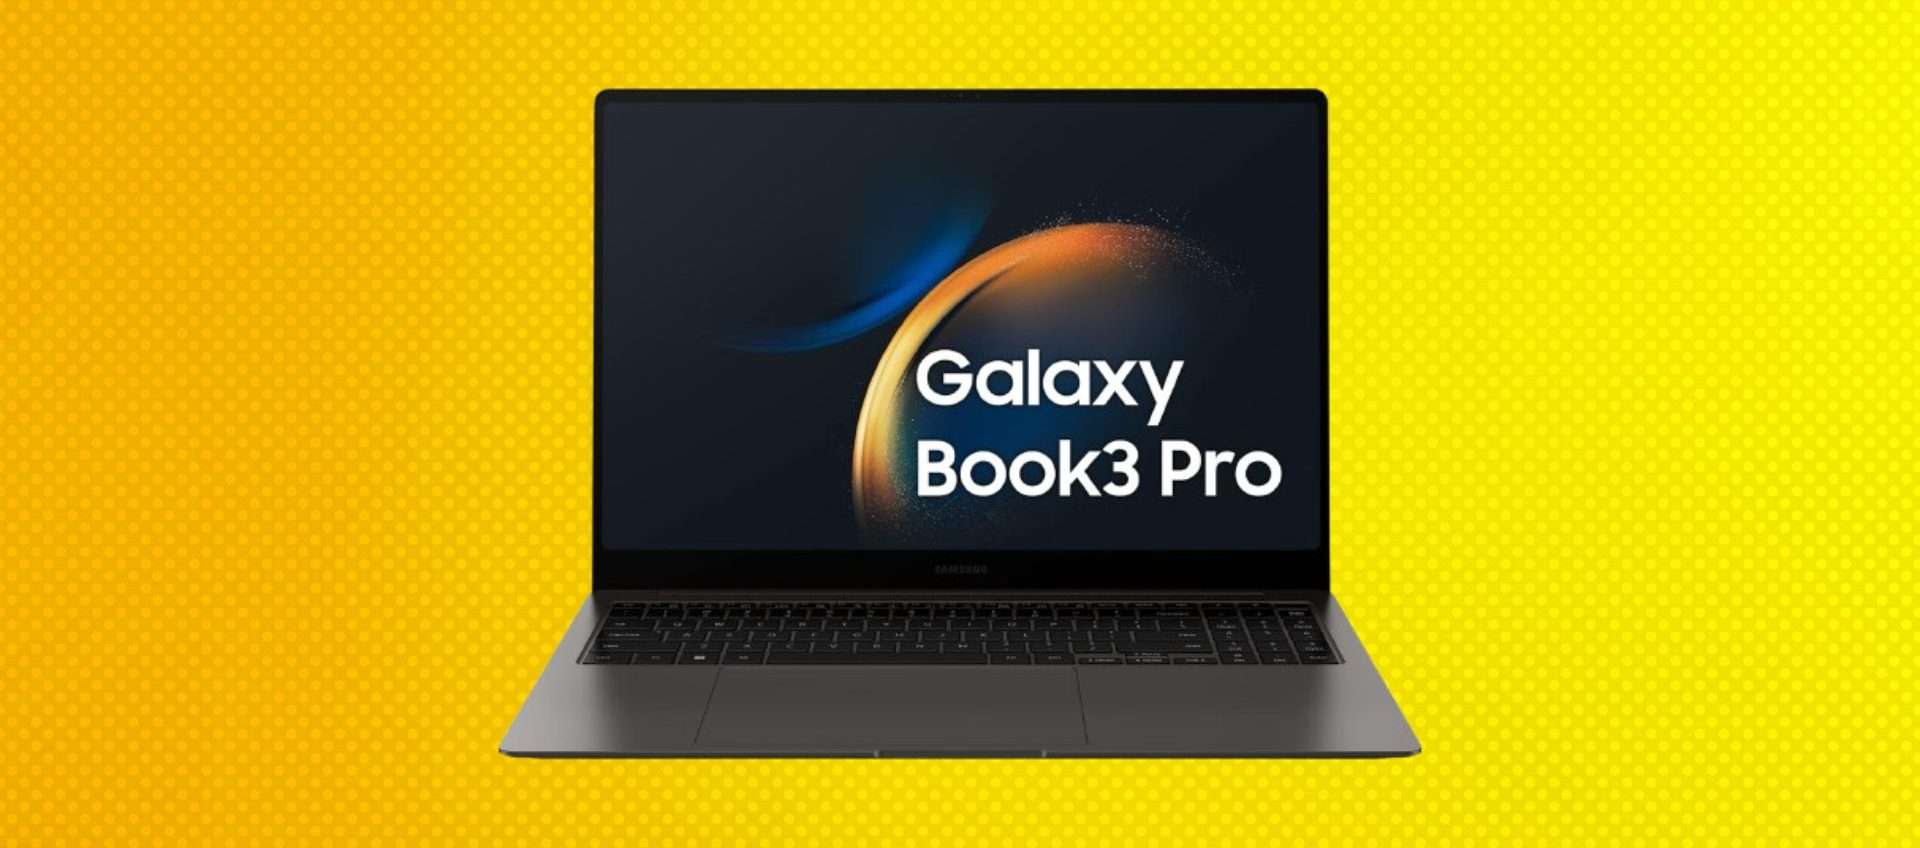 Samsung Galaxy Book3 Pro in offerta: oggi risparmi più di 200€